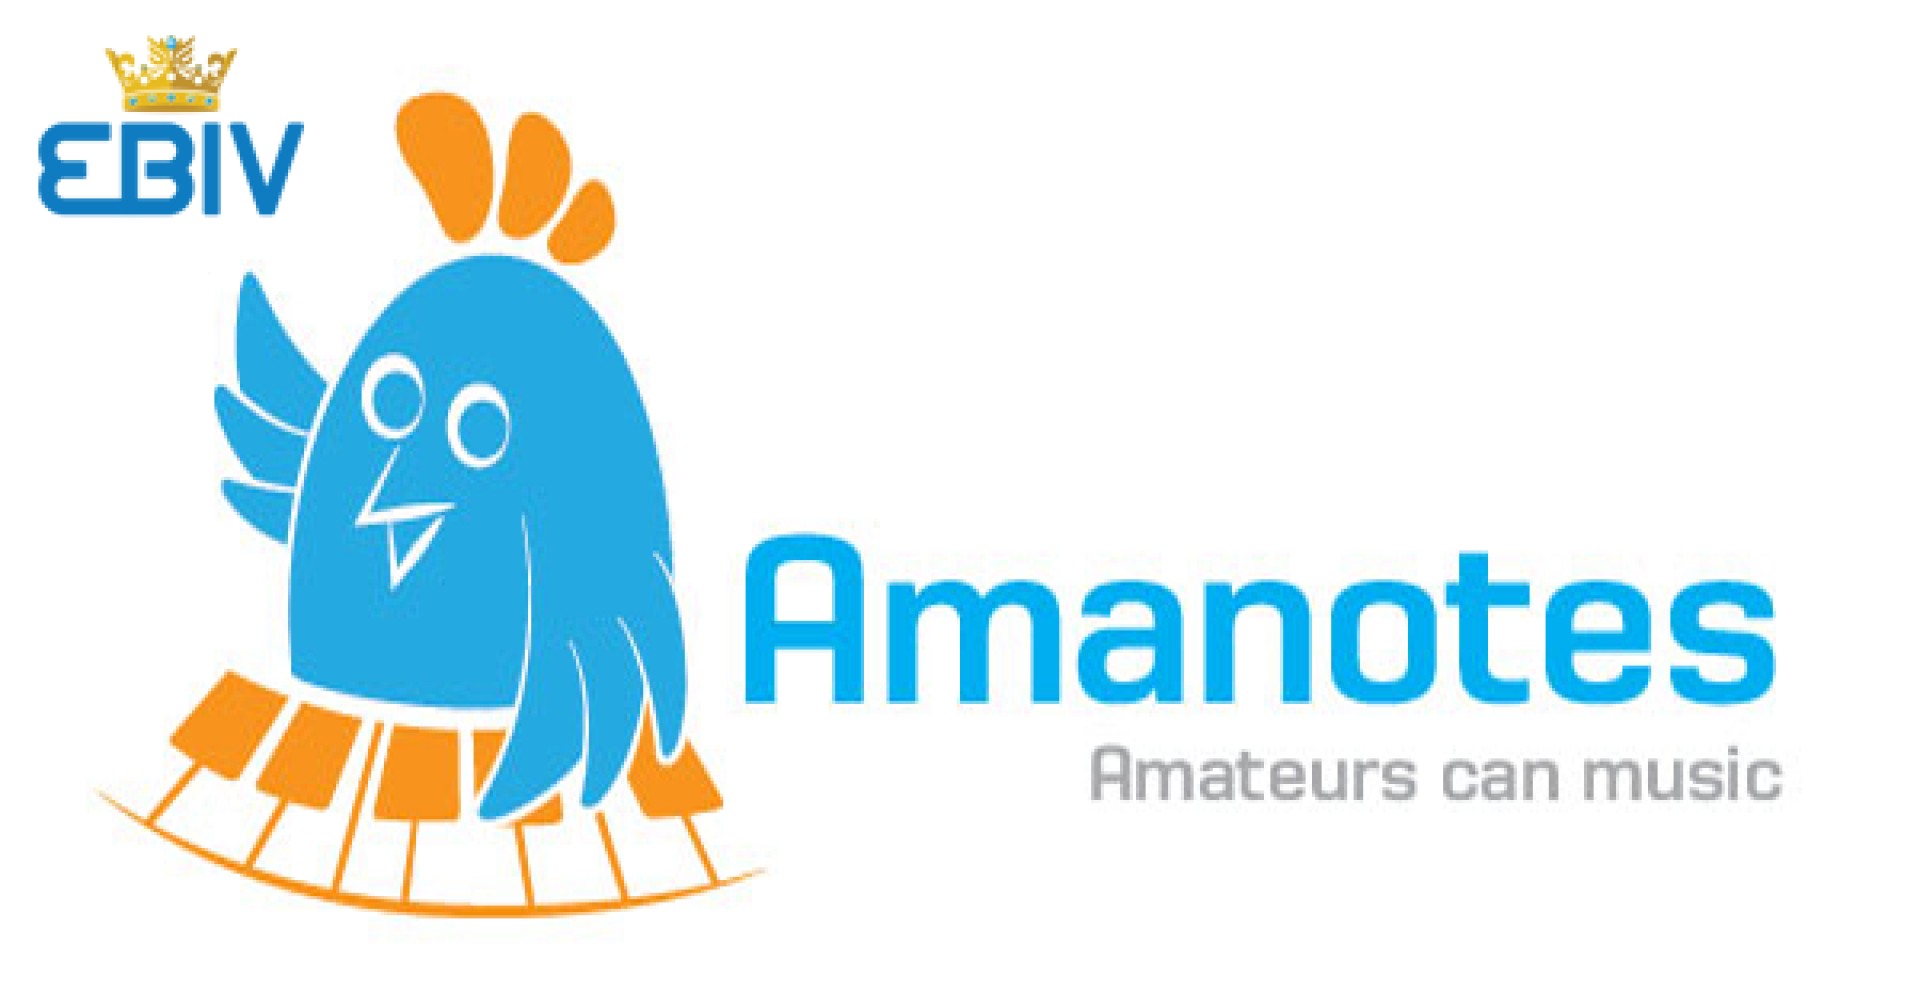 Công ty cổ phần Amanotes tuyển thực tập sinh nhân sự